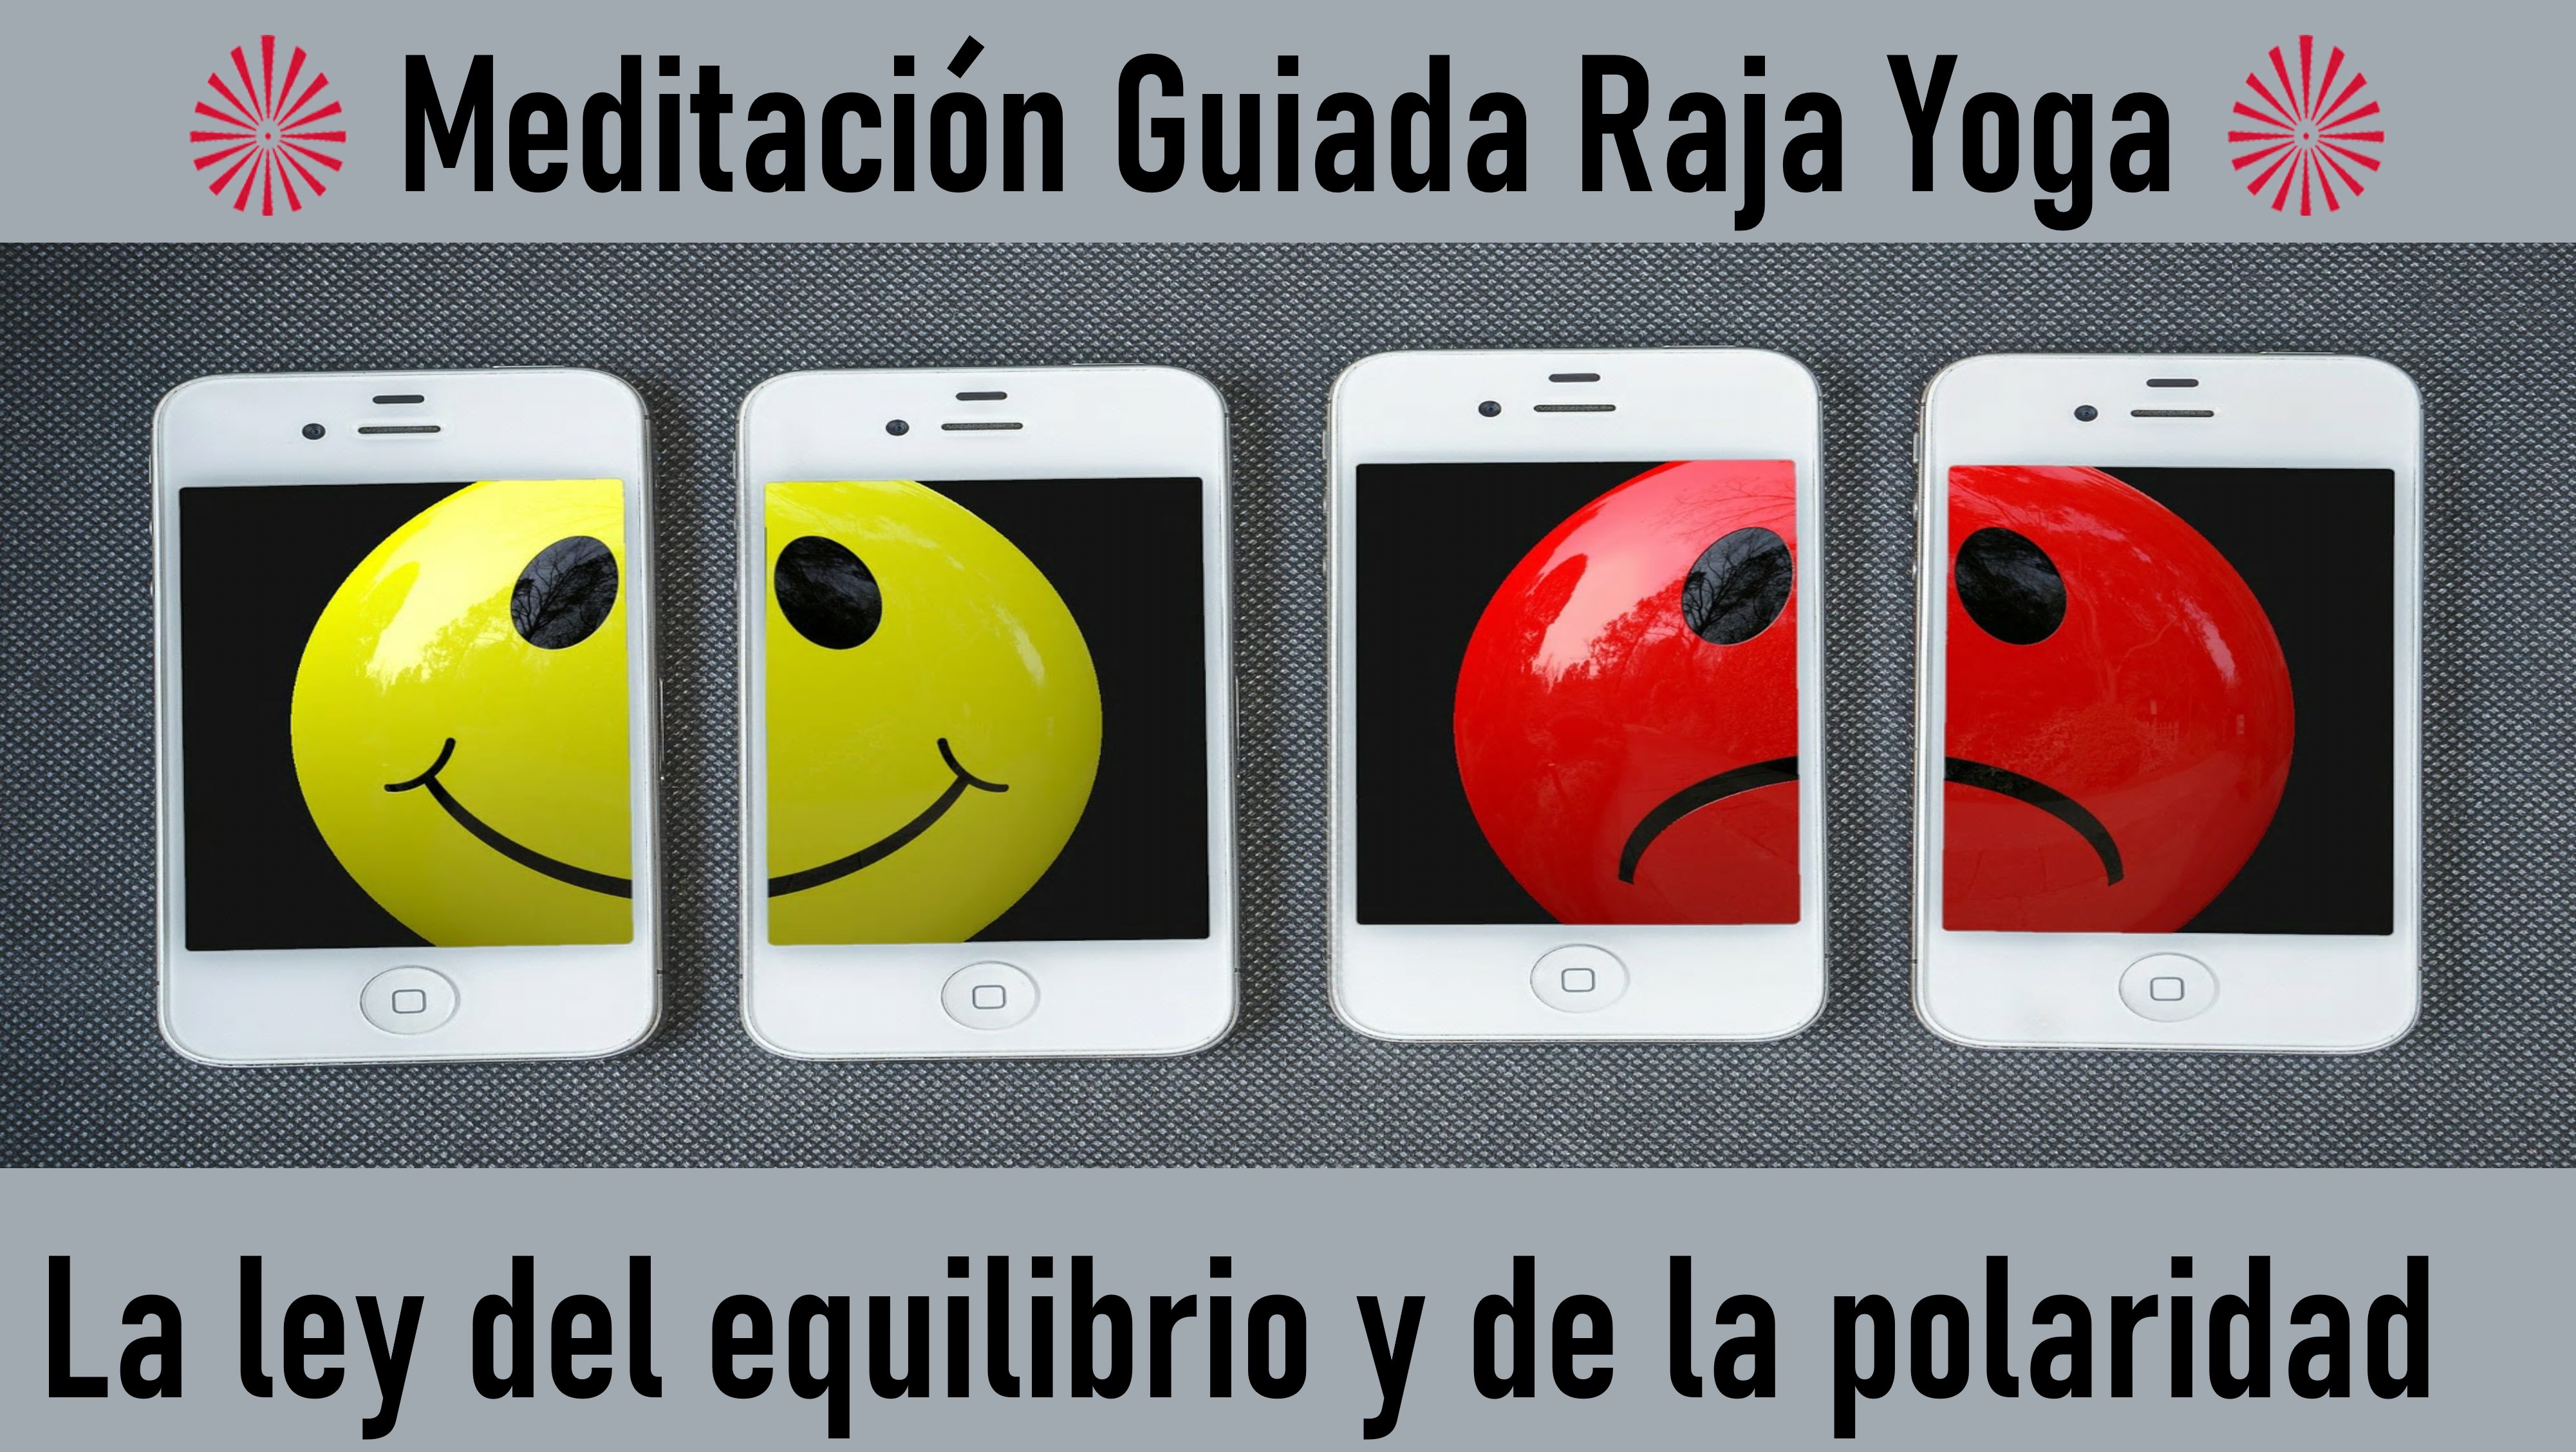 Charla y Meditación.Meditación Raja Yoga: La ley del equilibrio y de la polaridad (12Mayo 2020) On-line desde Canarias